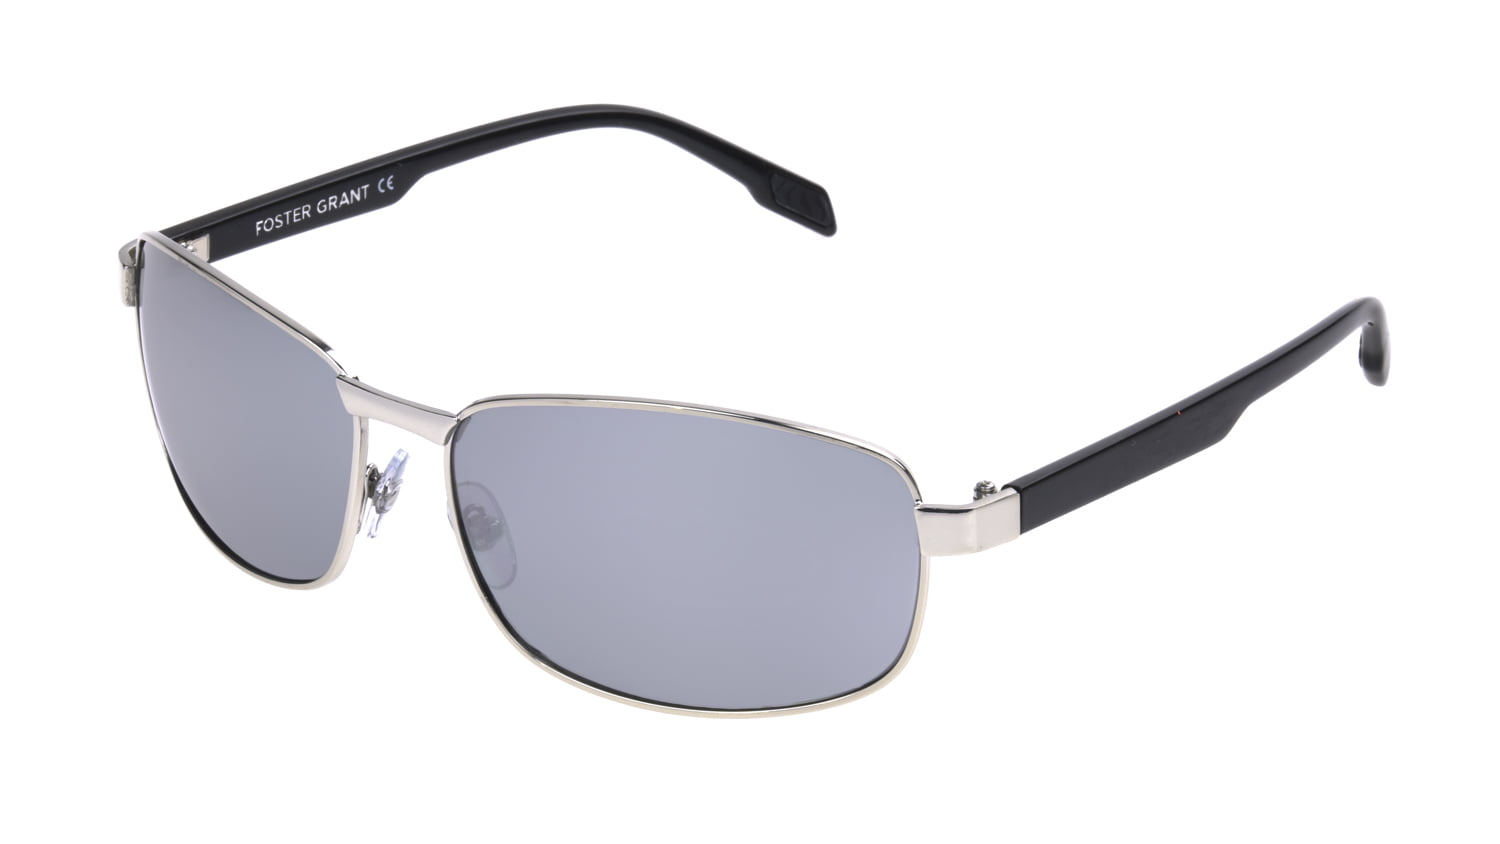 Foster Grant Men's Silver Mirrored Square Sunglasses HH03 - Walmart.com